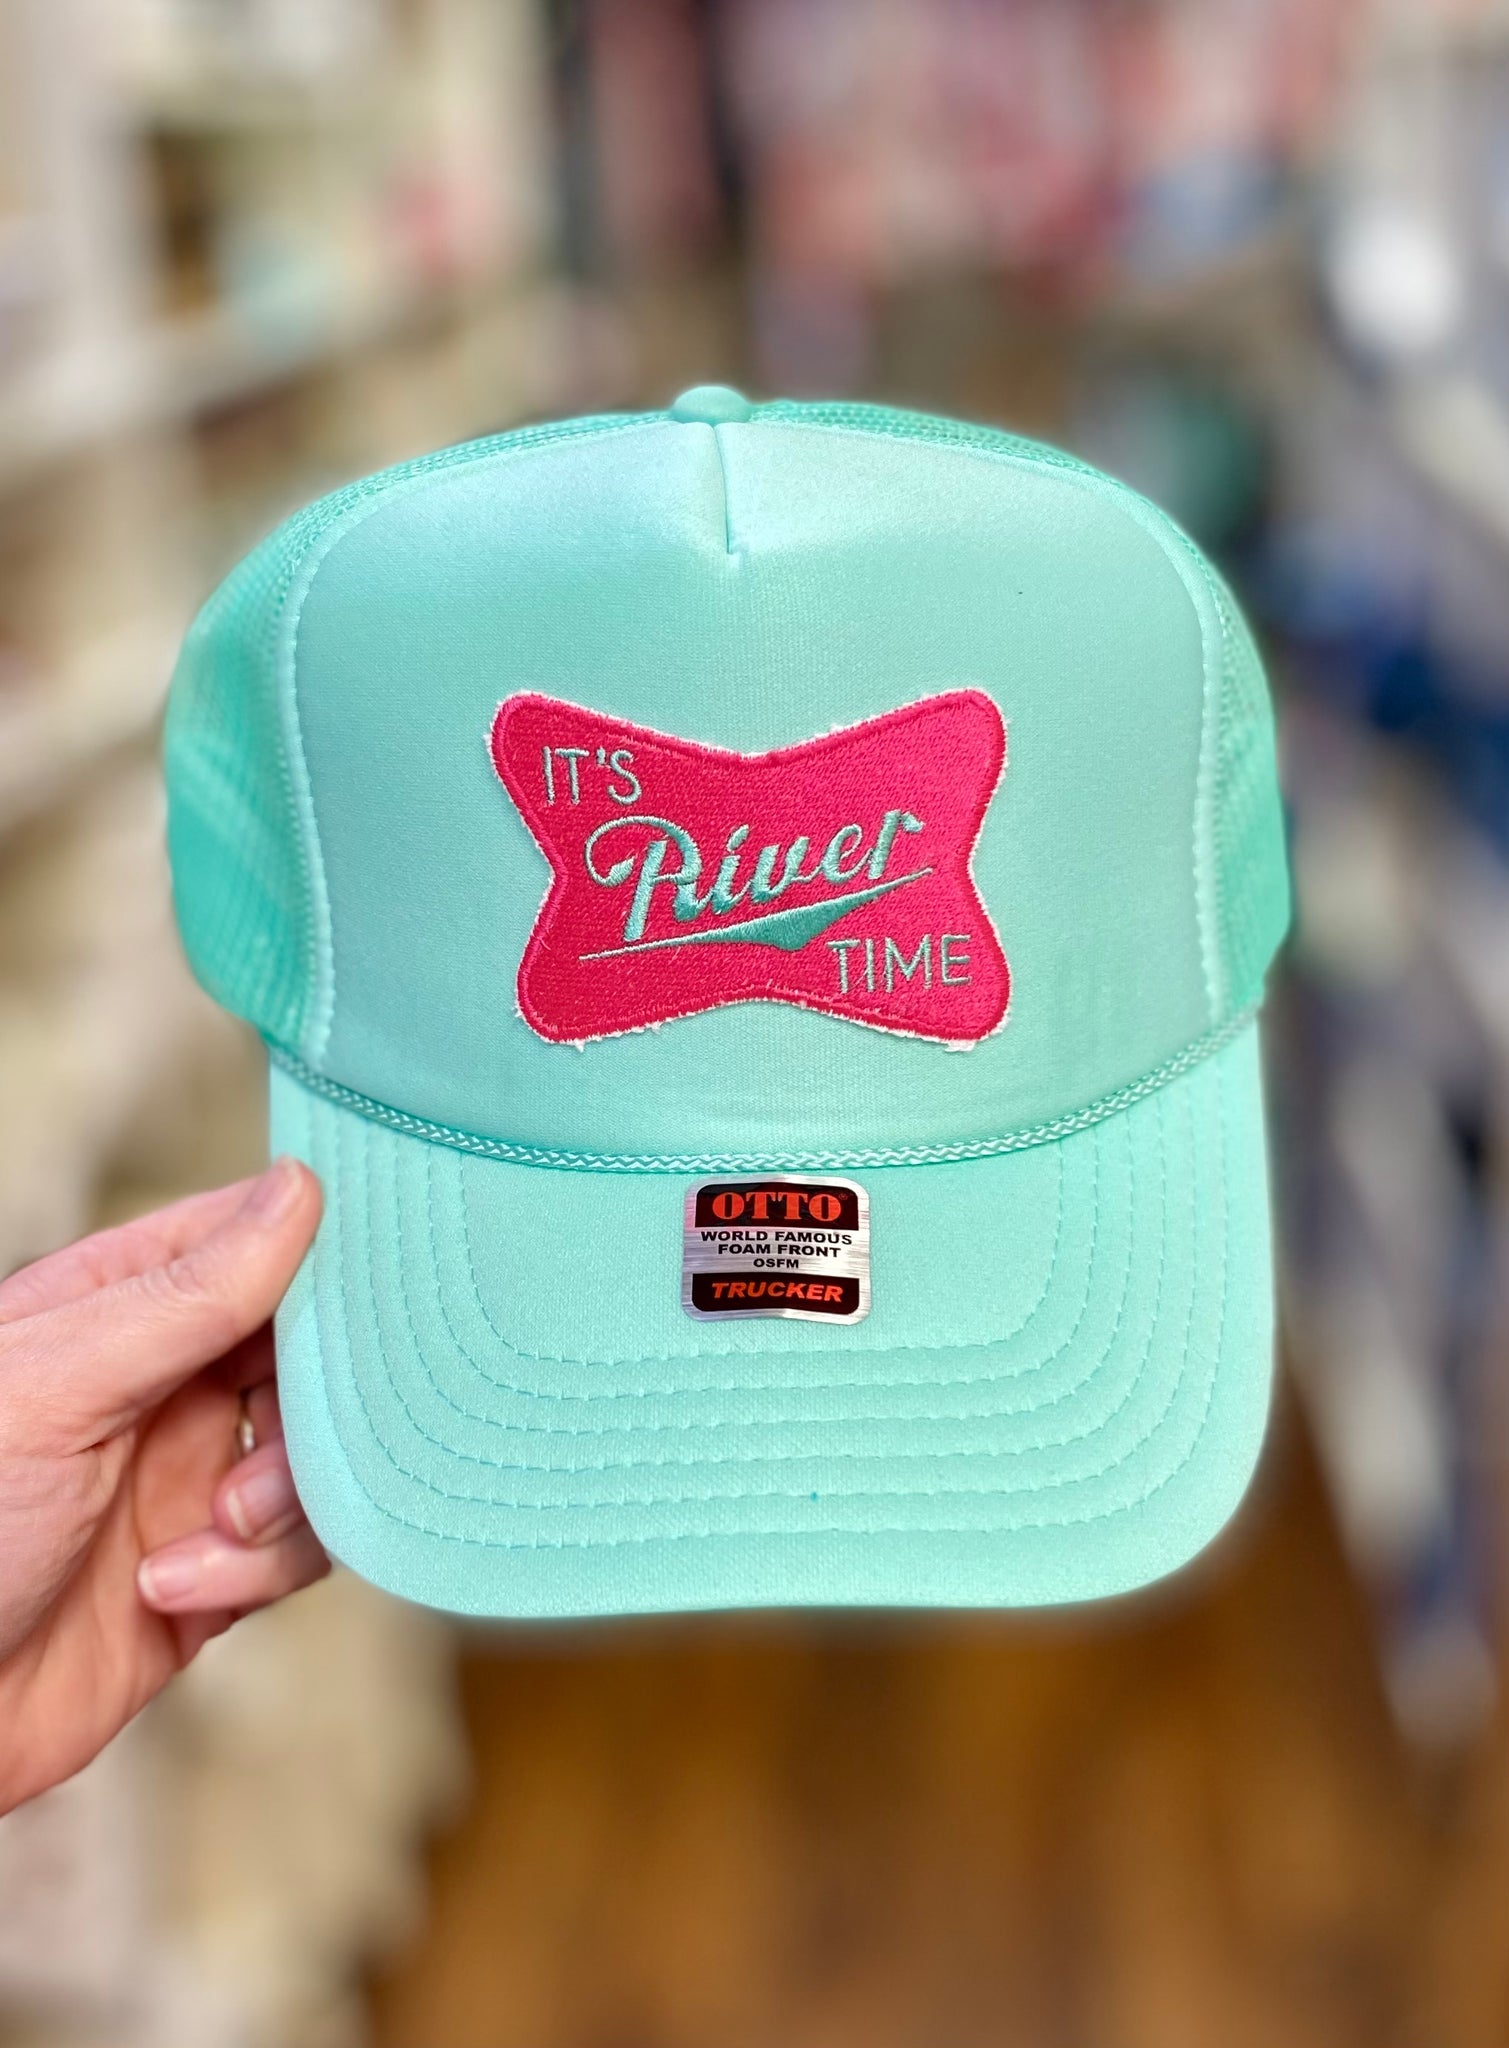 It’s ________ Time Trucker Hats